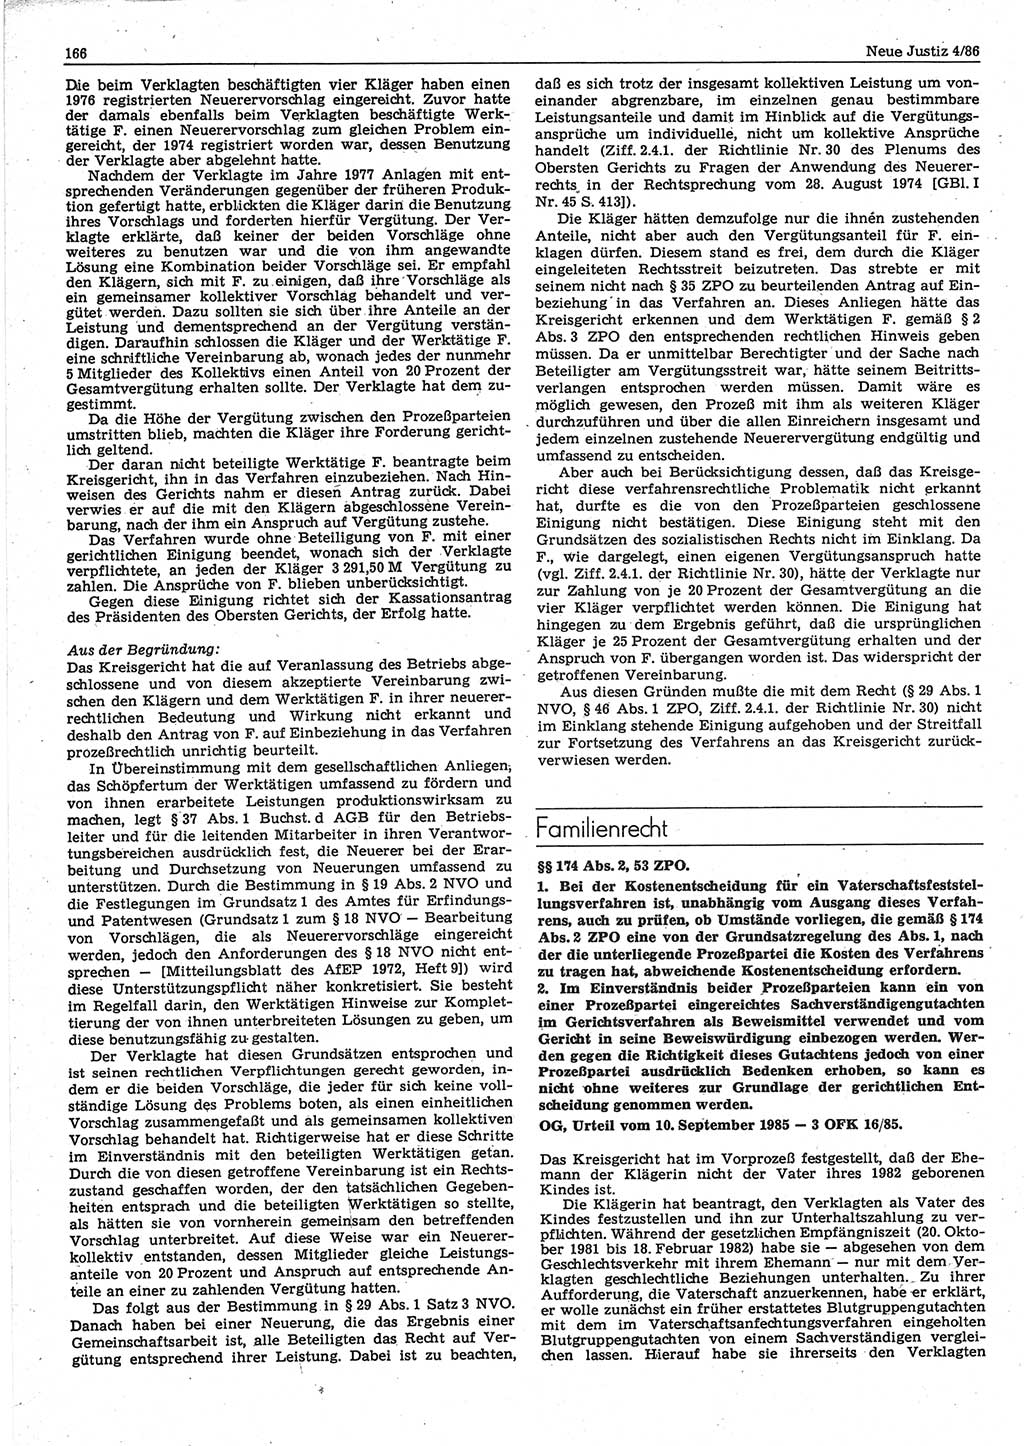 Neue Justiz (NJ), Zeitschrift für sozialistisches Recht und Gesetzlichkeit [Deutsche Demokratische Republik (DDR)], 40. Jahrgang 1986, Seite 166 (NJ DDR 1986, S. 166)